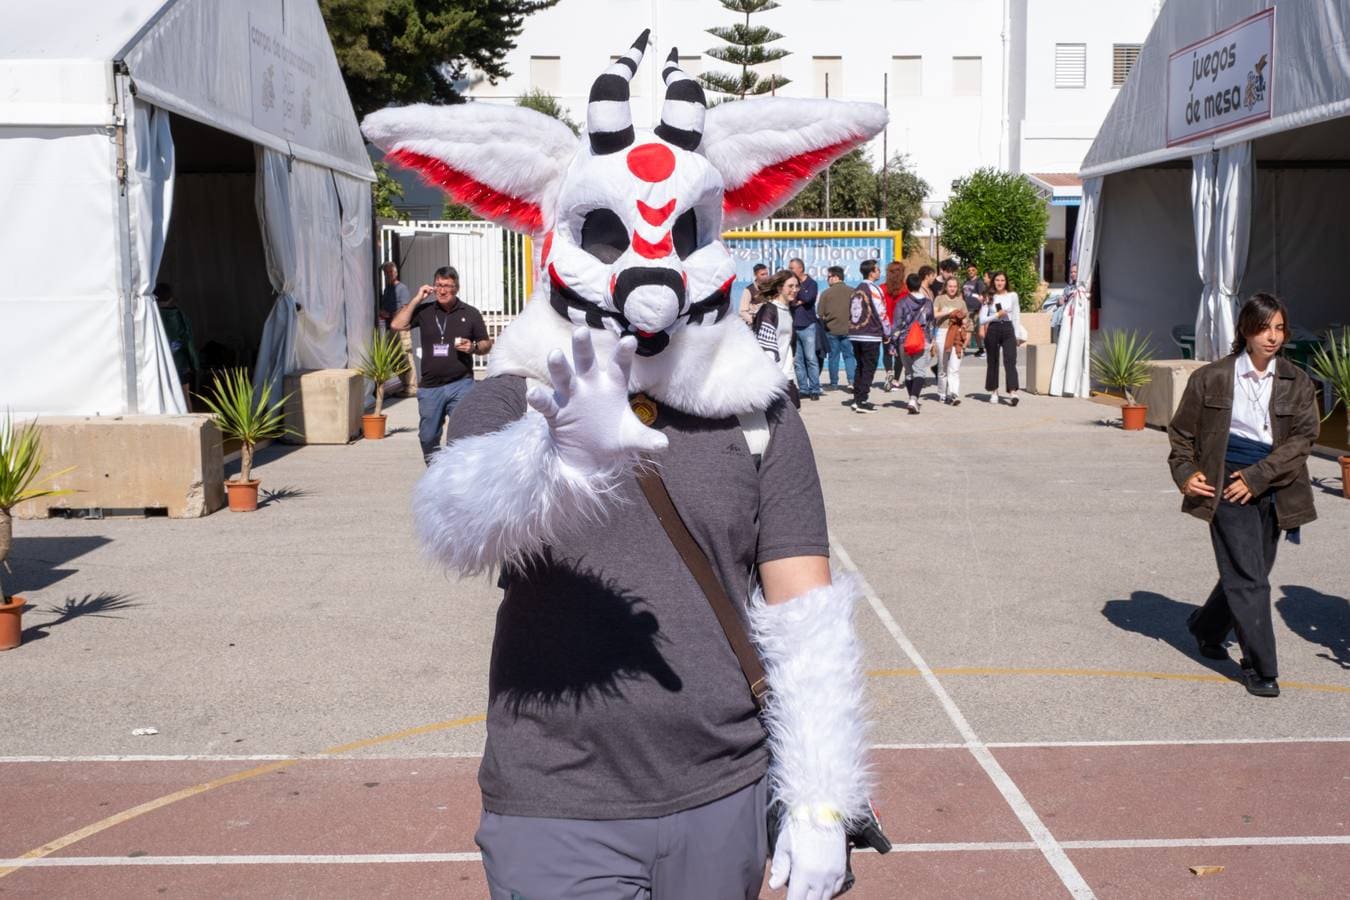 Fotos: El Festival Manga vuelve a Cádiz